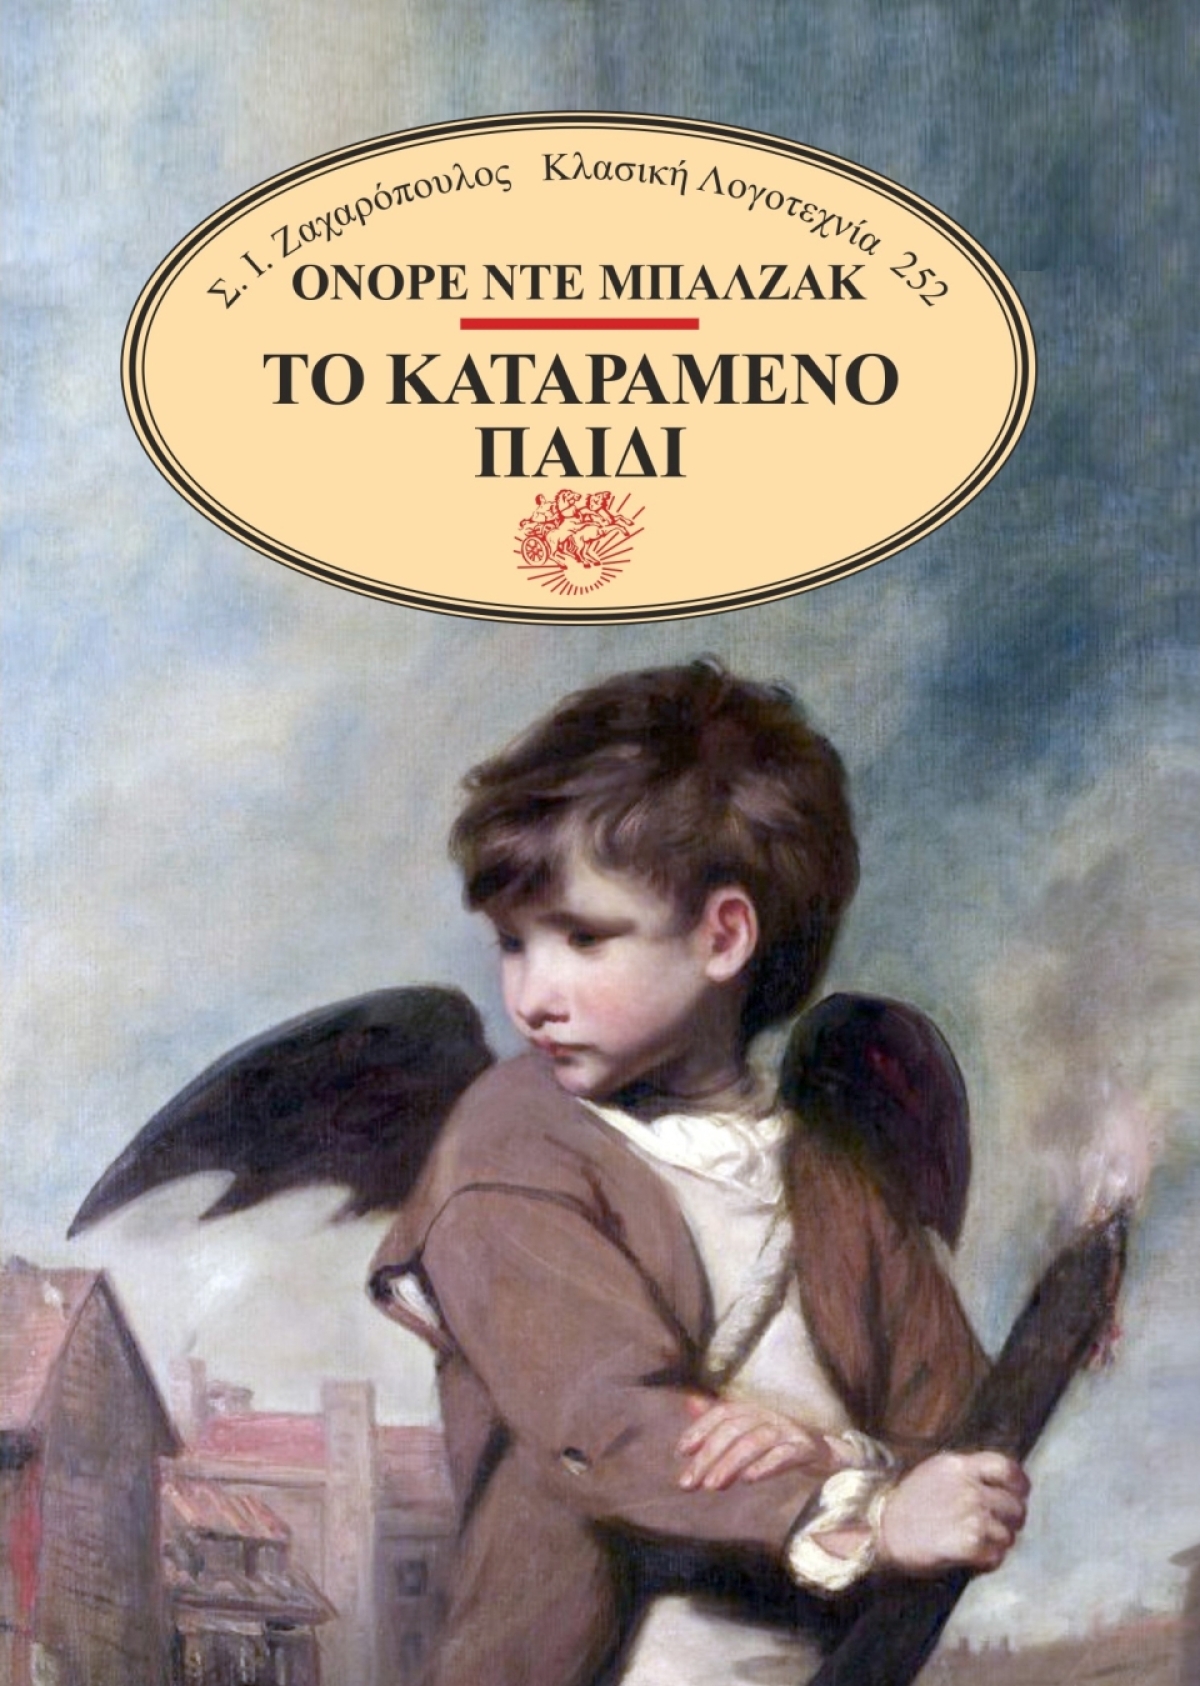 «Το καταραμένο παιδί», το βιβλίο του Ονορέ ντε Μπαλζάκ κυκλοφόρησε από τις Εκδόσεις Σ.Ι. Ζαχαρόπουλος!